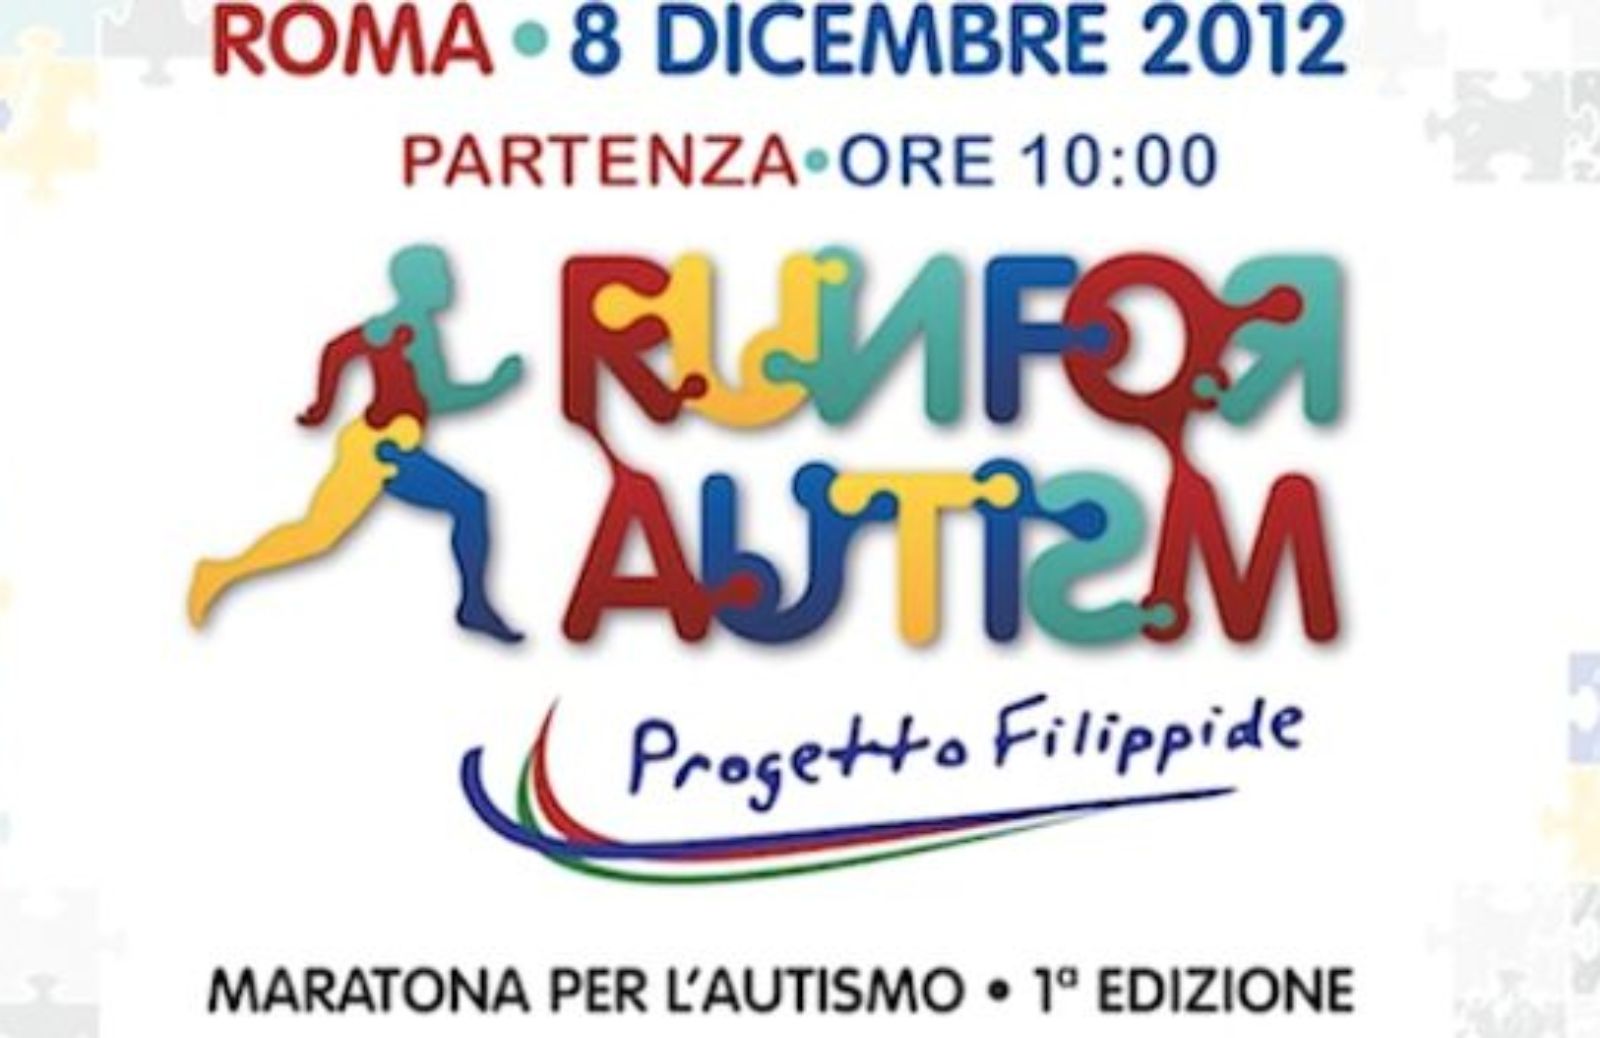 Come partecipare a Run for Autism-1^edizione